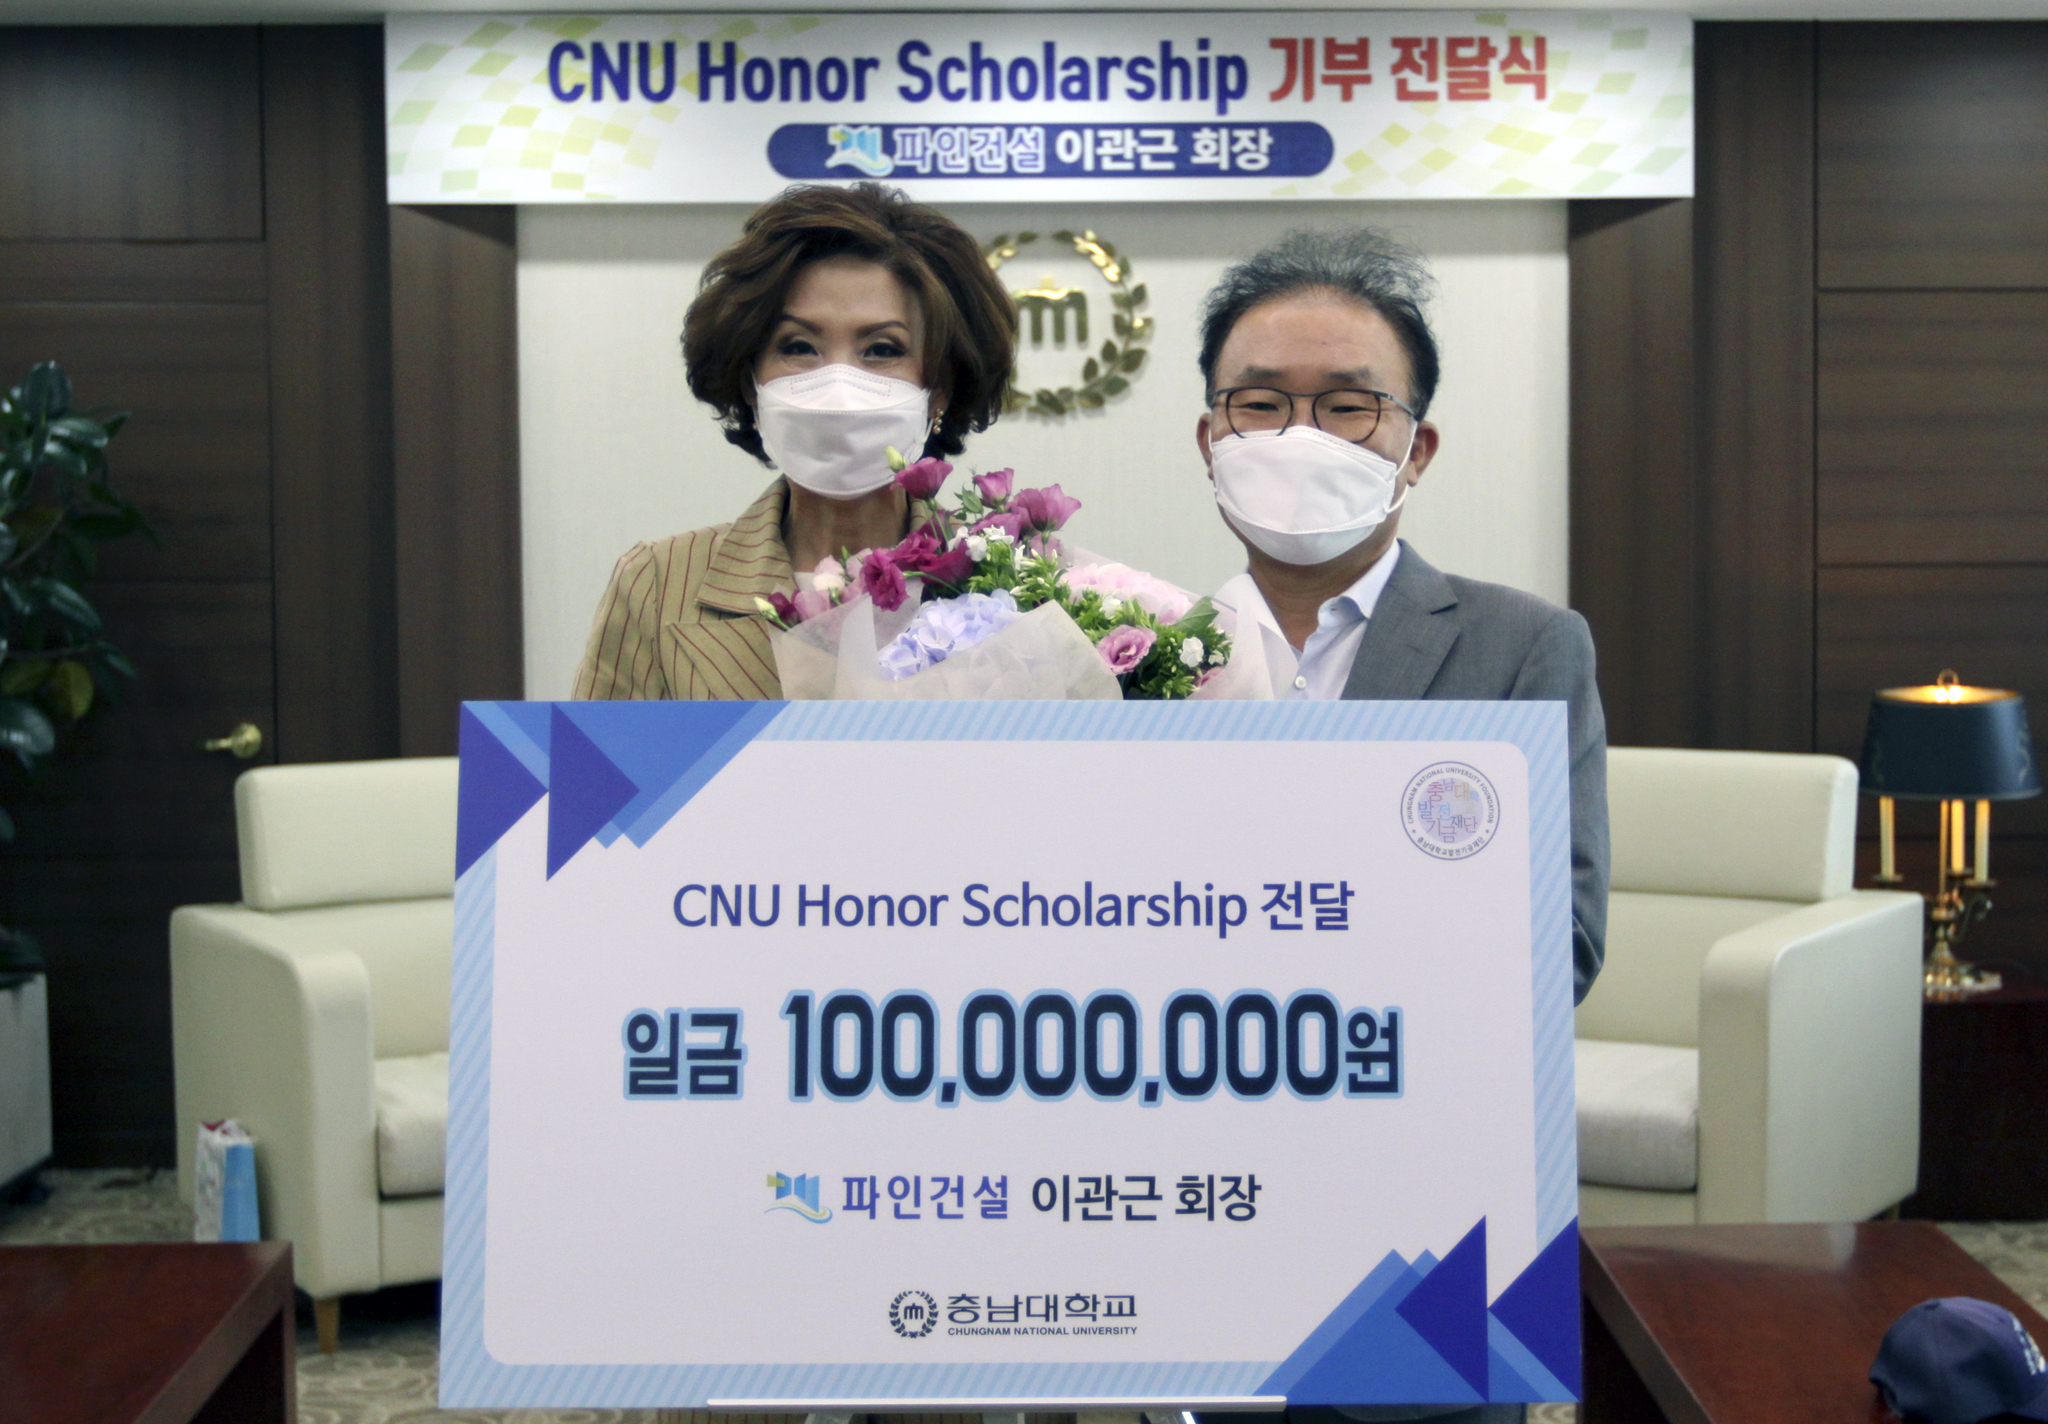 파인건설(주) 이관근 회장, ‘CNU Honor Scholarship’ 장학기금 1억원 기부 사진